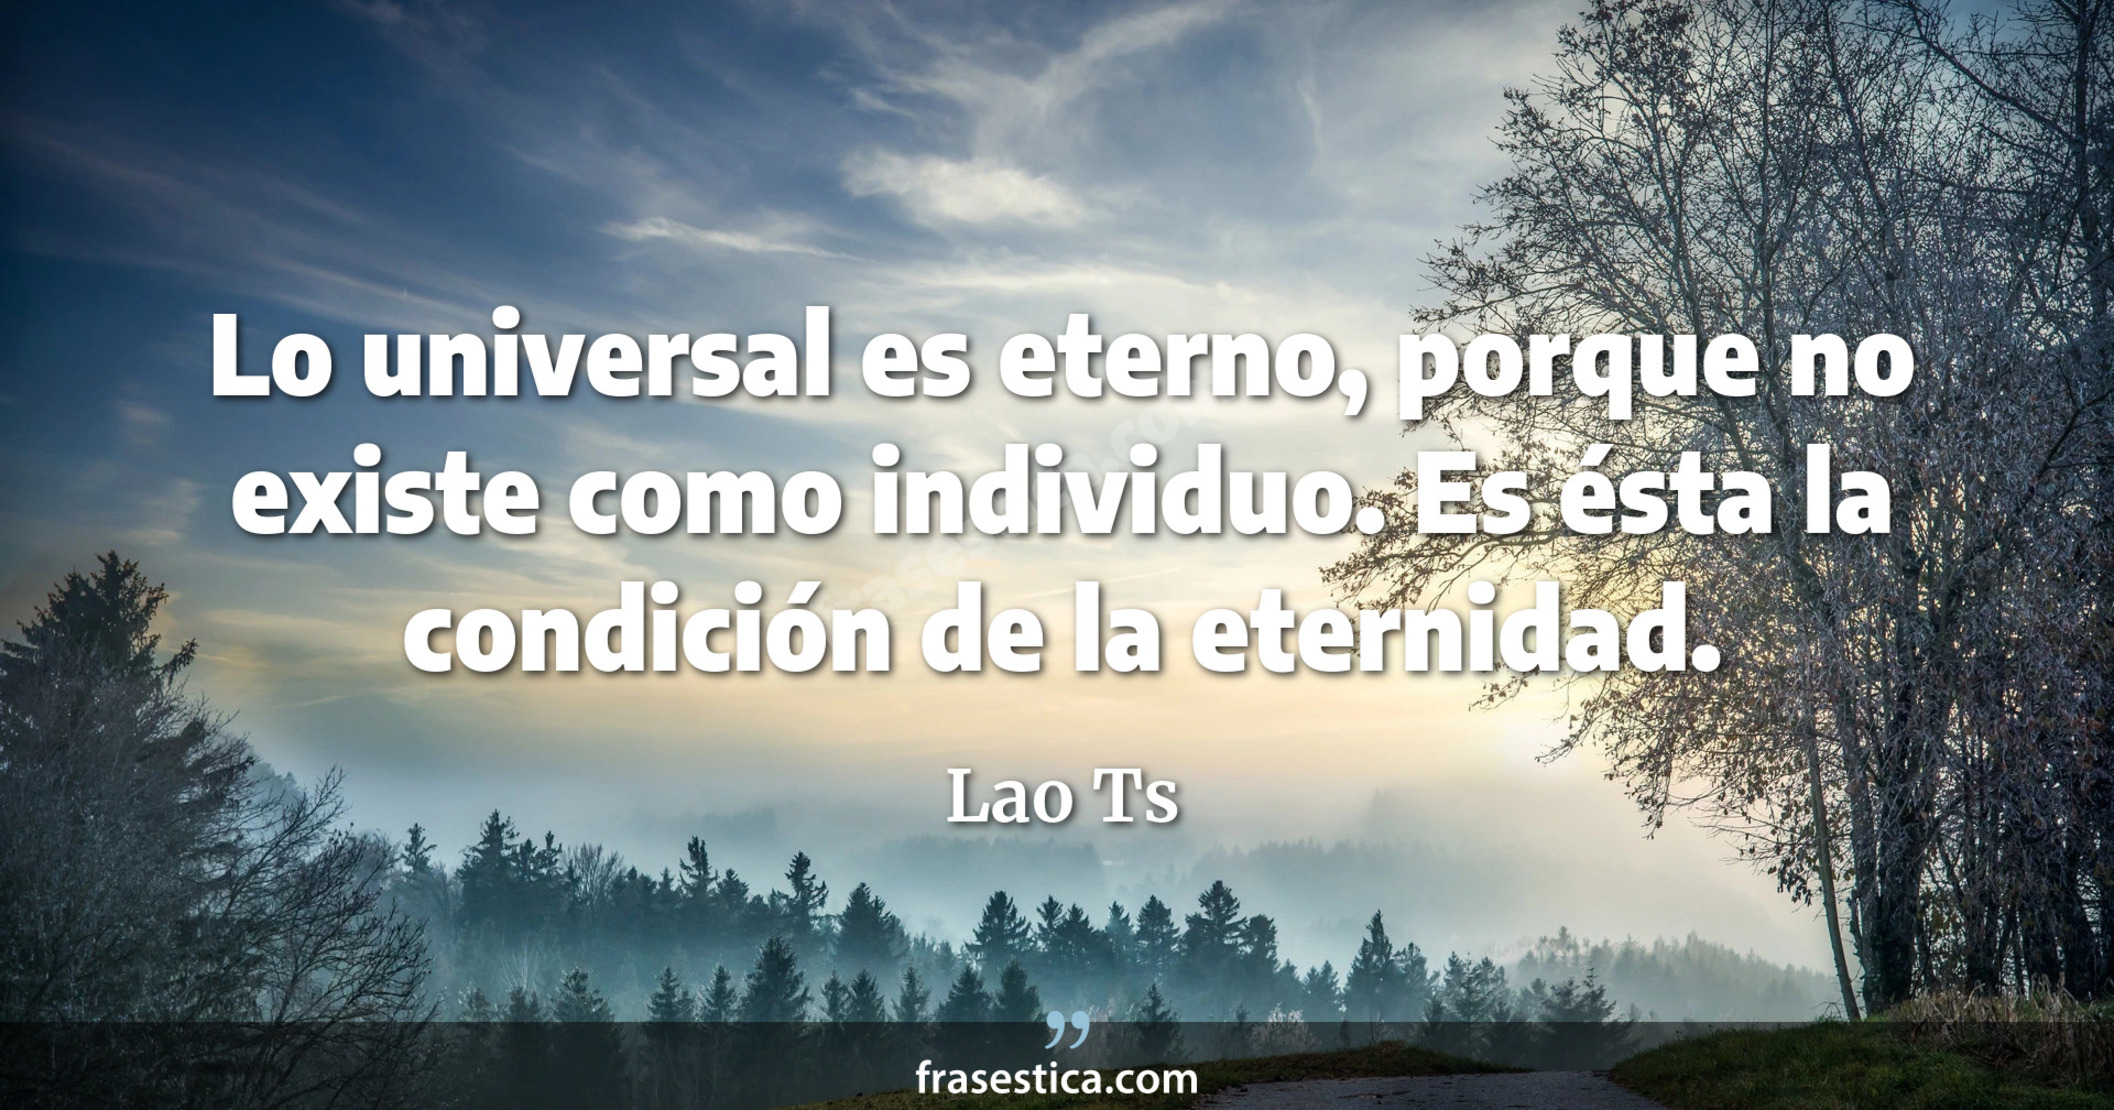 Lo universal es eterno, porque no existe como individuo. Es ésta la condición de la eternidad. - Lao Ts